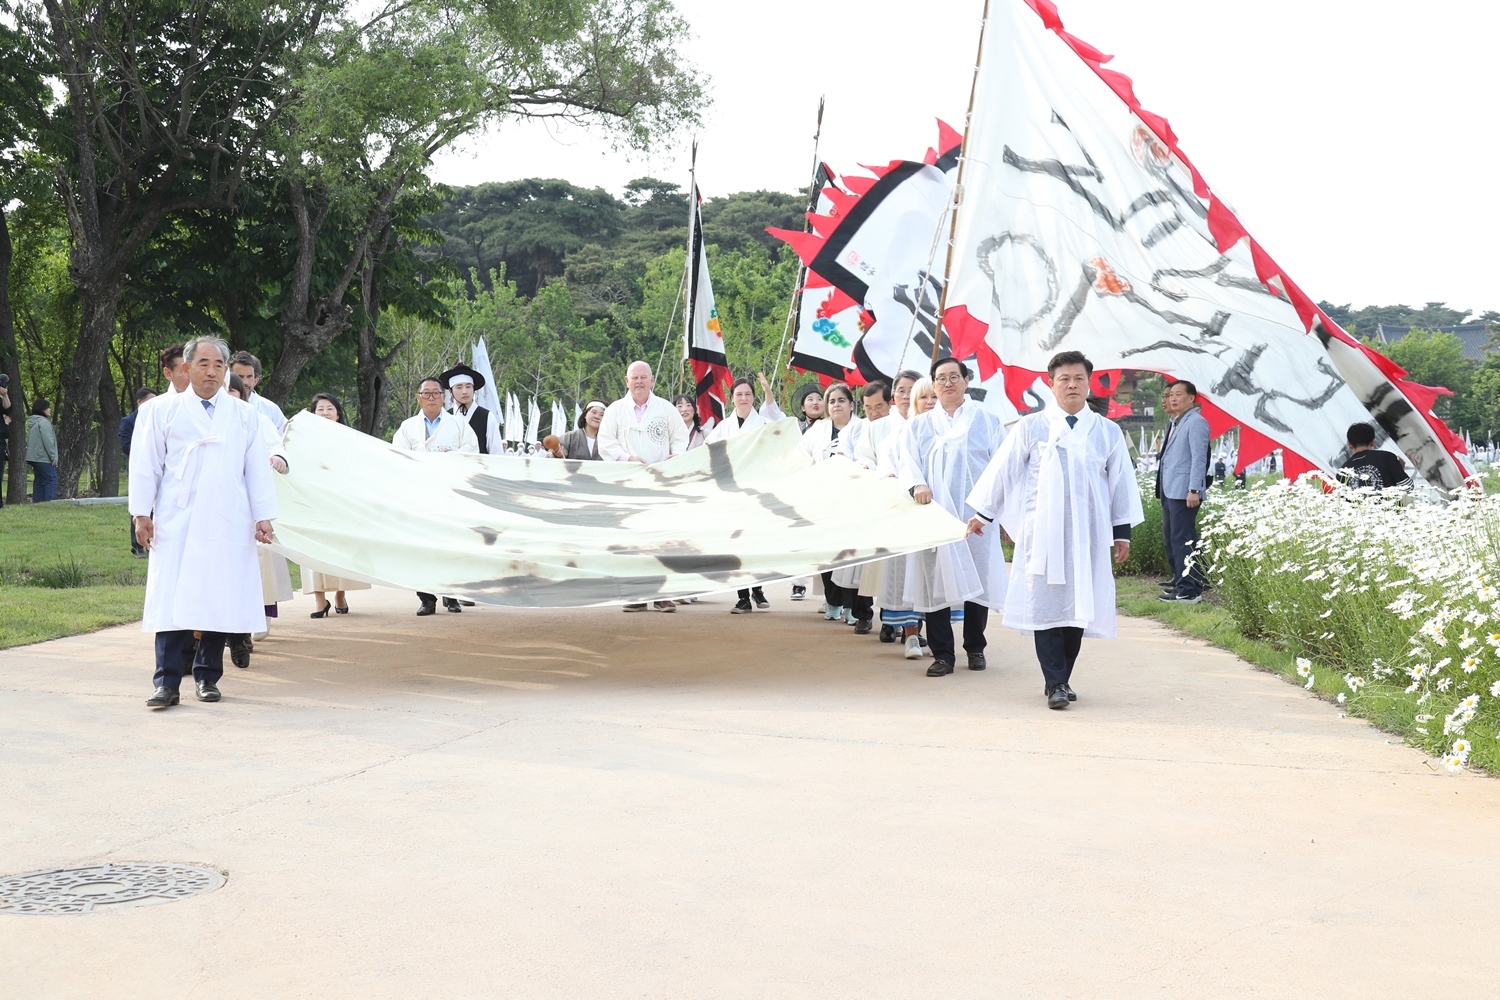 동학농민혁명, 모두의 하늘을 열다’ 동학농민혁명기념제 11일 정읍서 개막